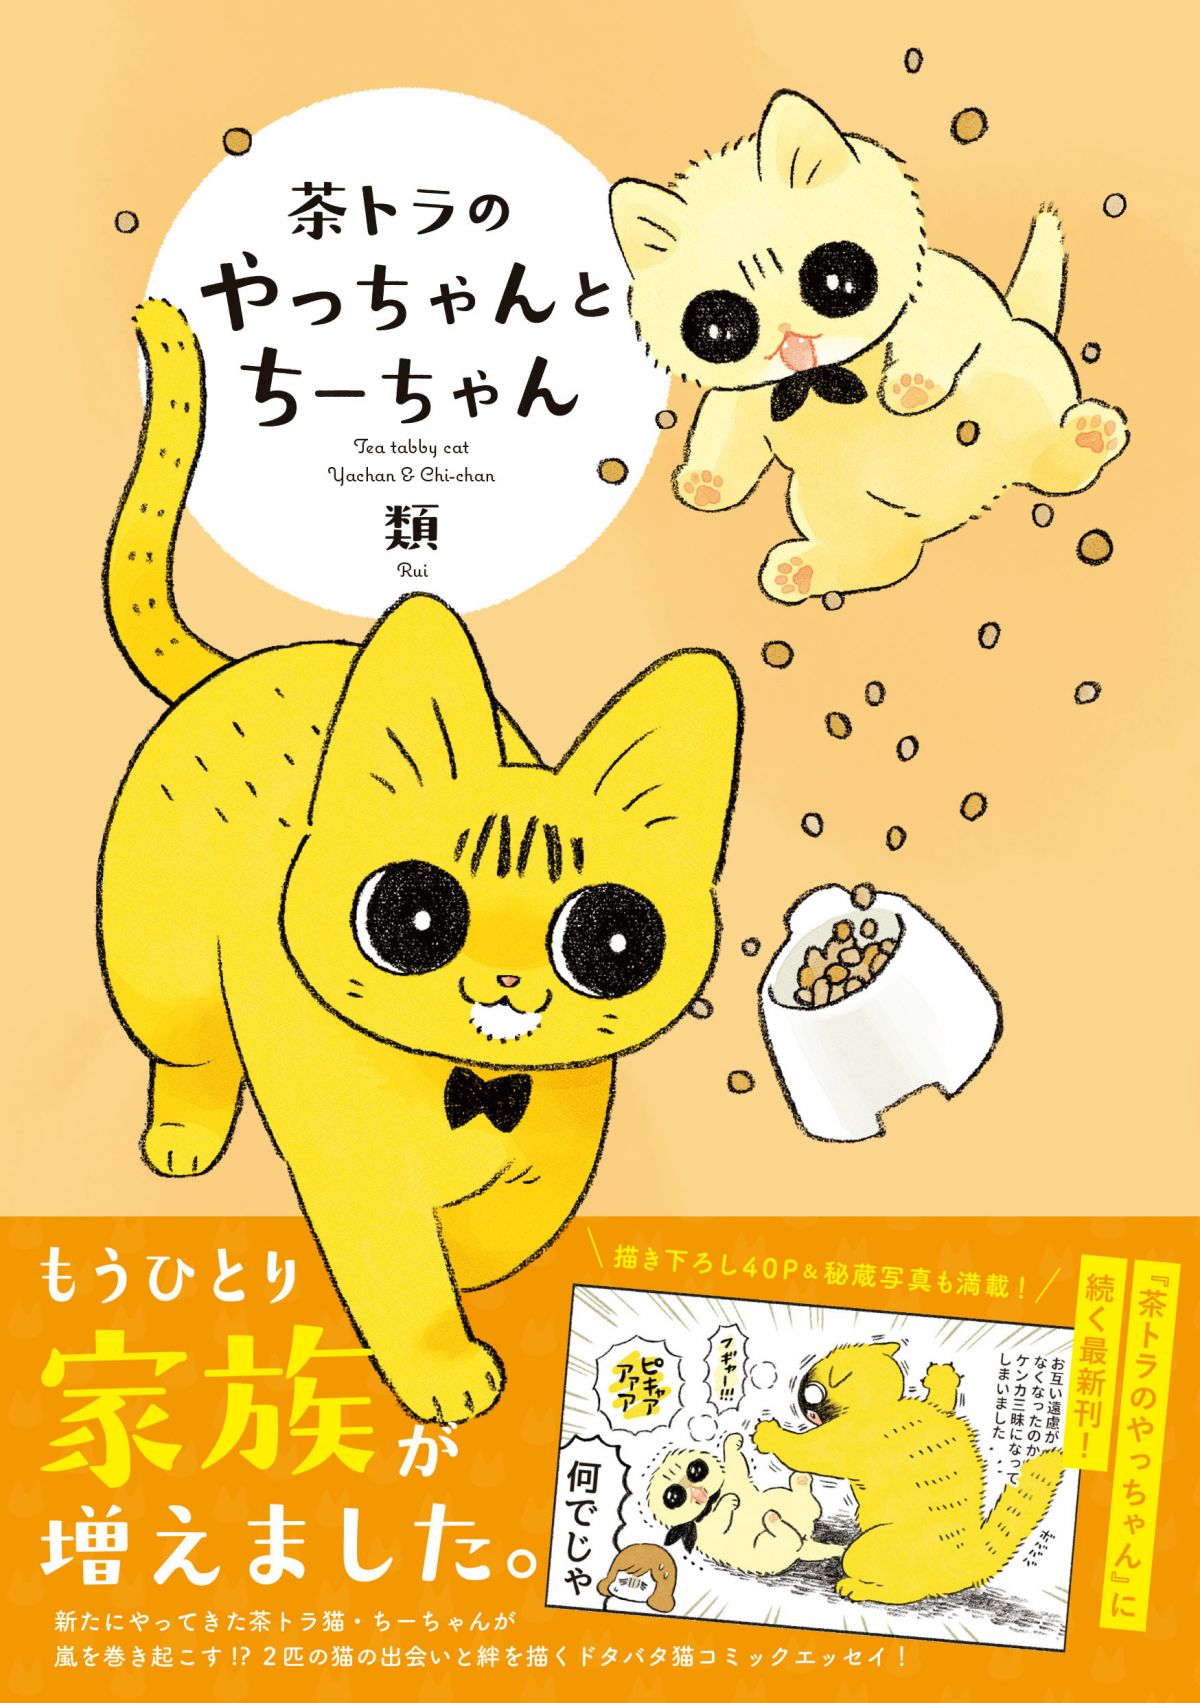 動物愛が炸裂 人気動物漫画家 佐倉イサミさんと類さんが語る 小さな家族 を描く意味 ダ ヴィンチニュース